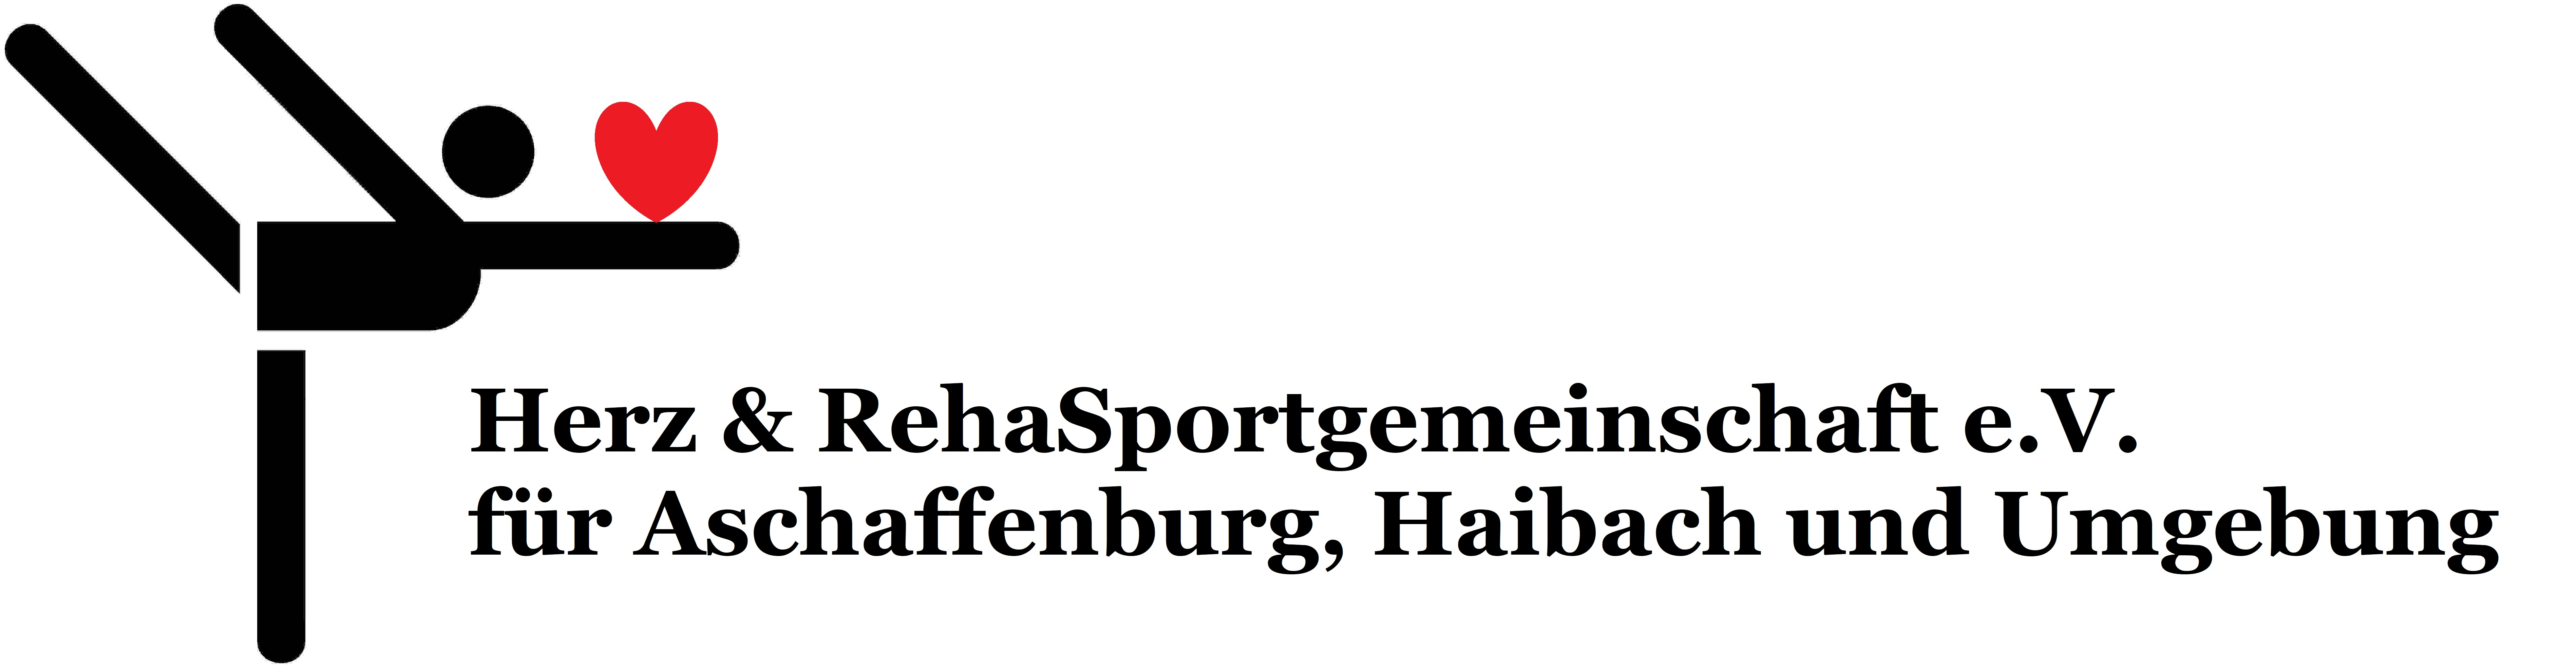 Herzsport-Haibach